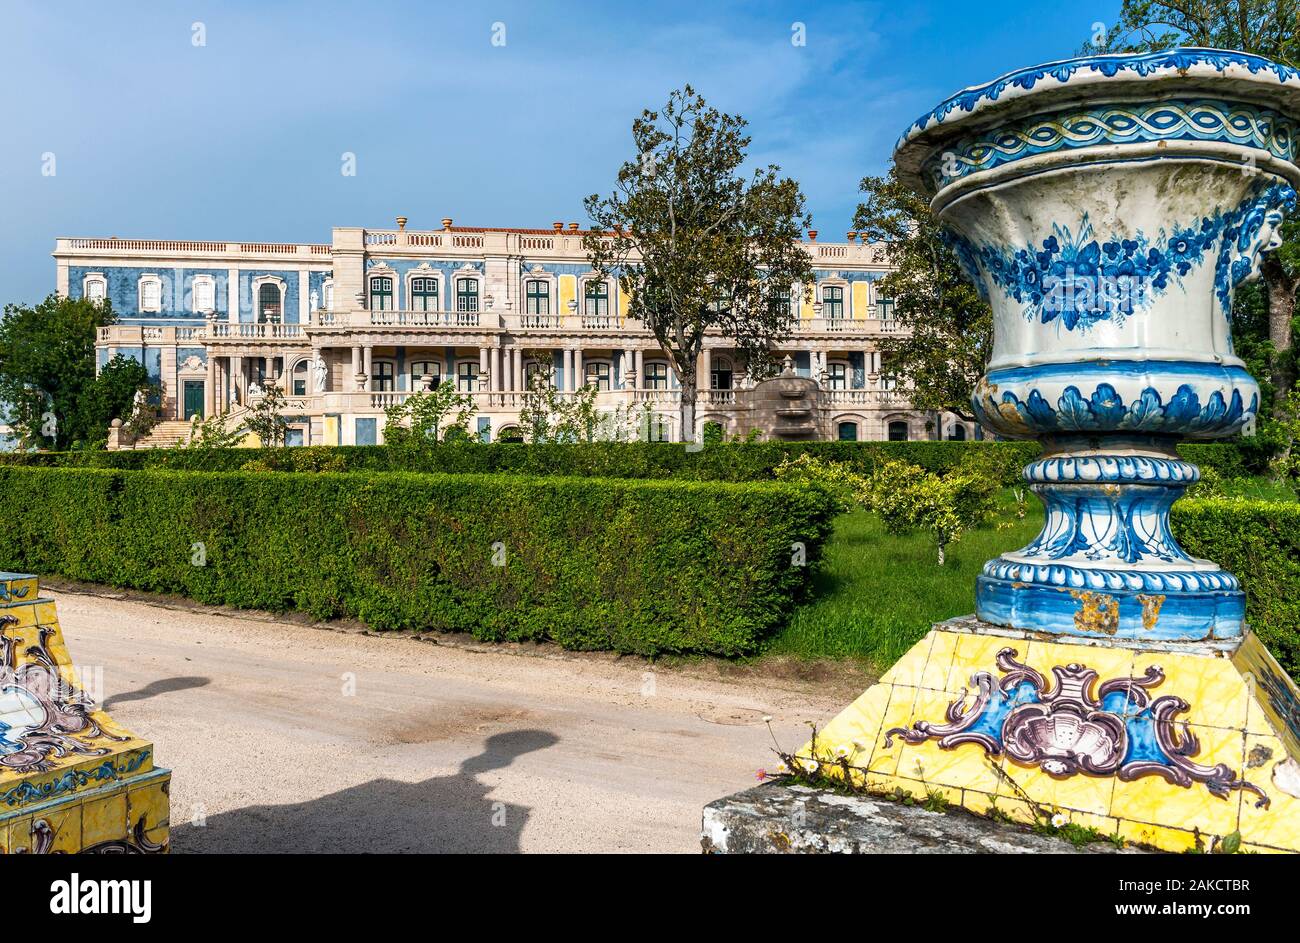 Vue sur le palais national de Queluz, Portugal Banque D'Images